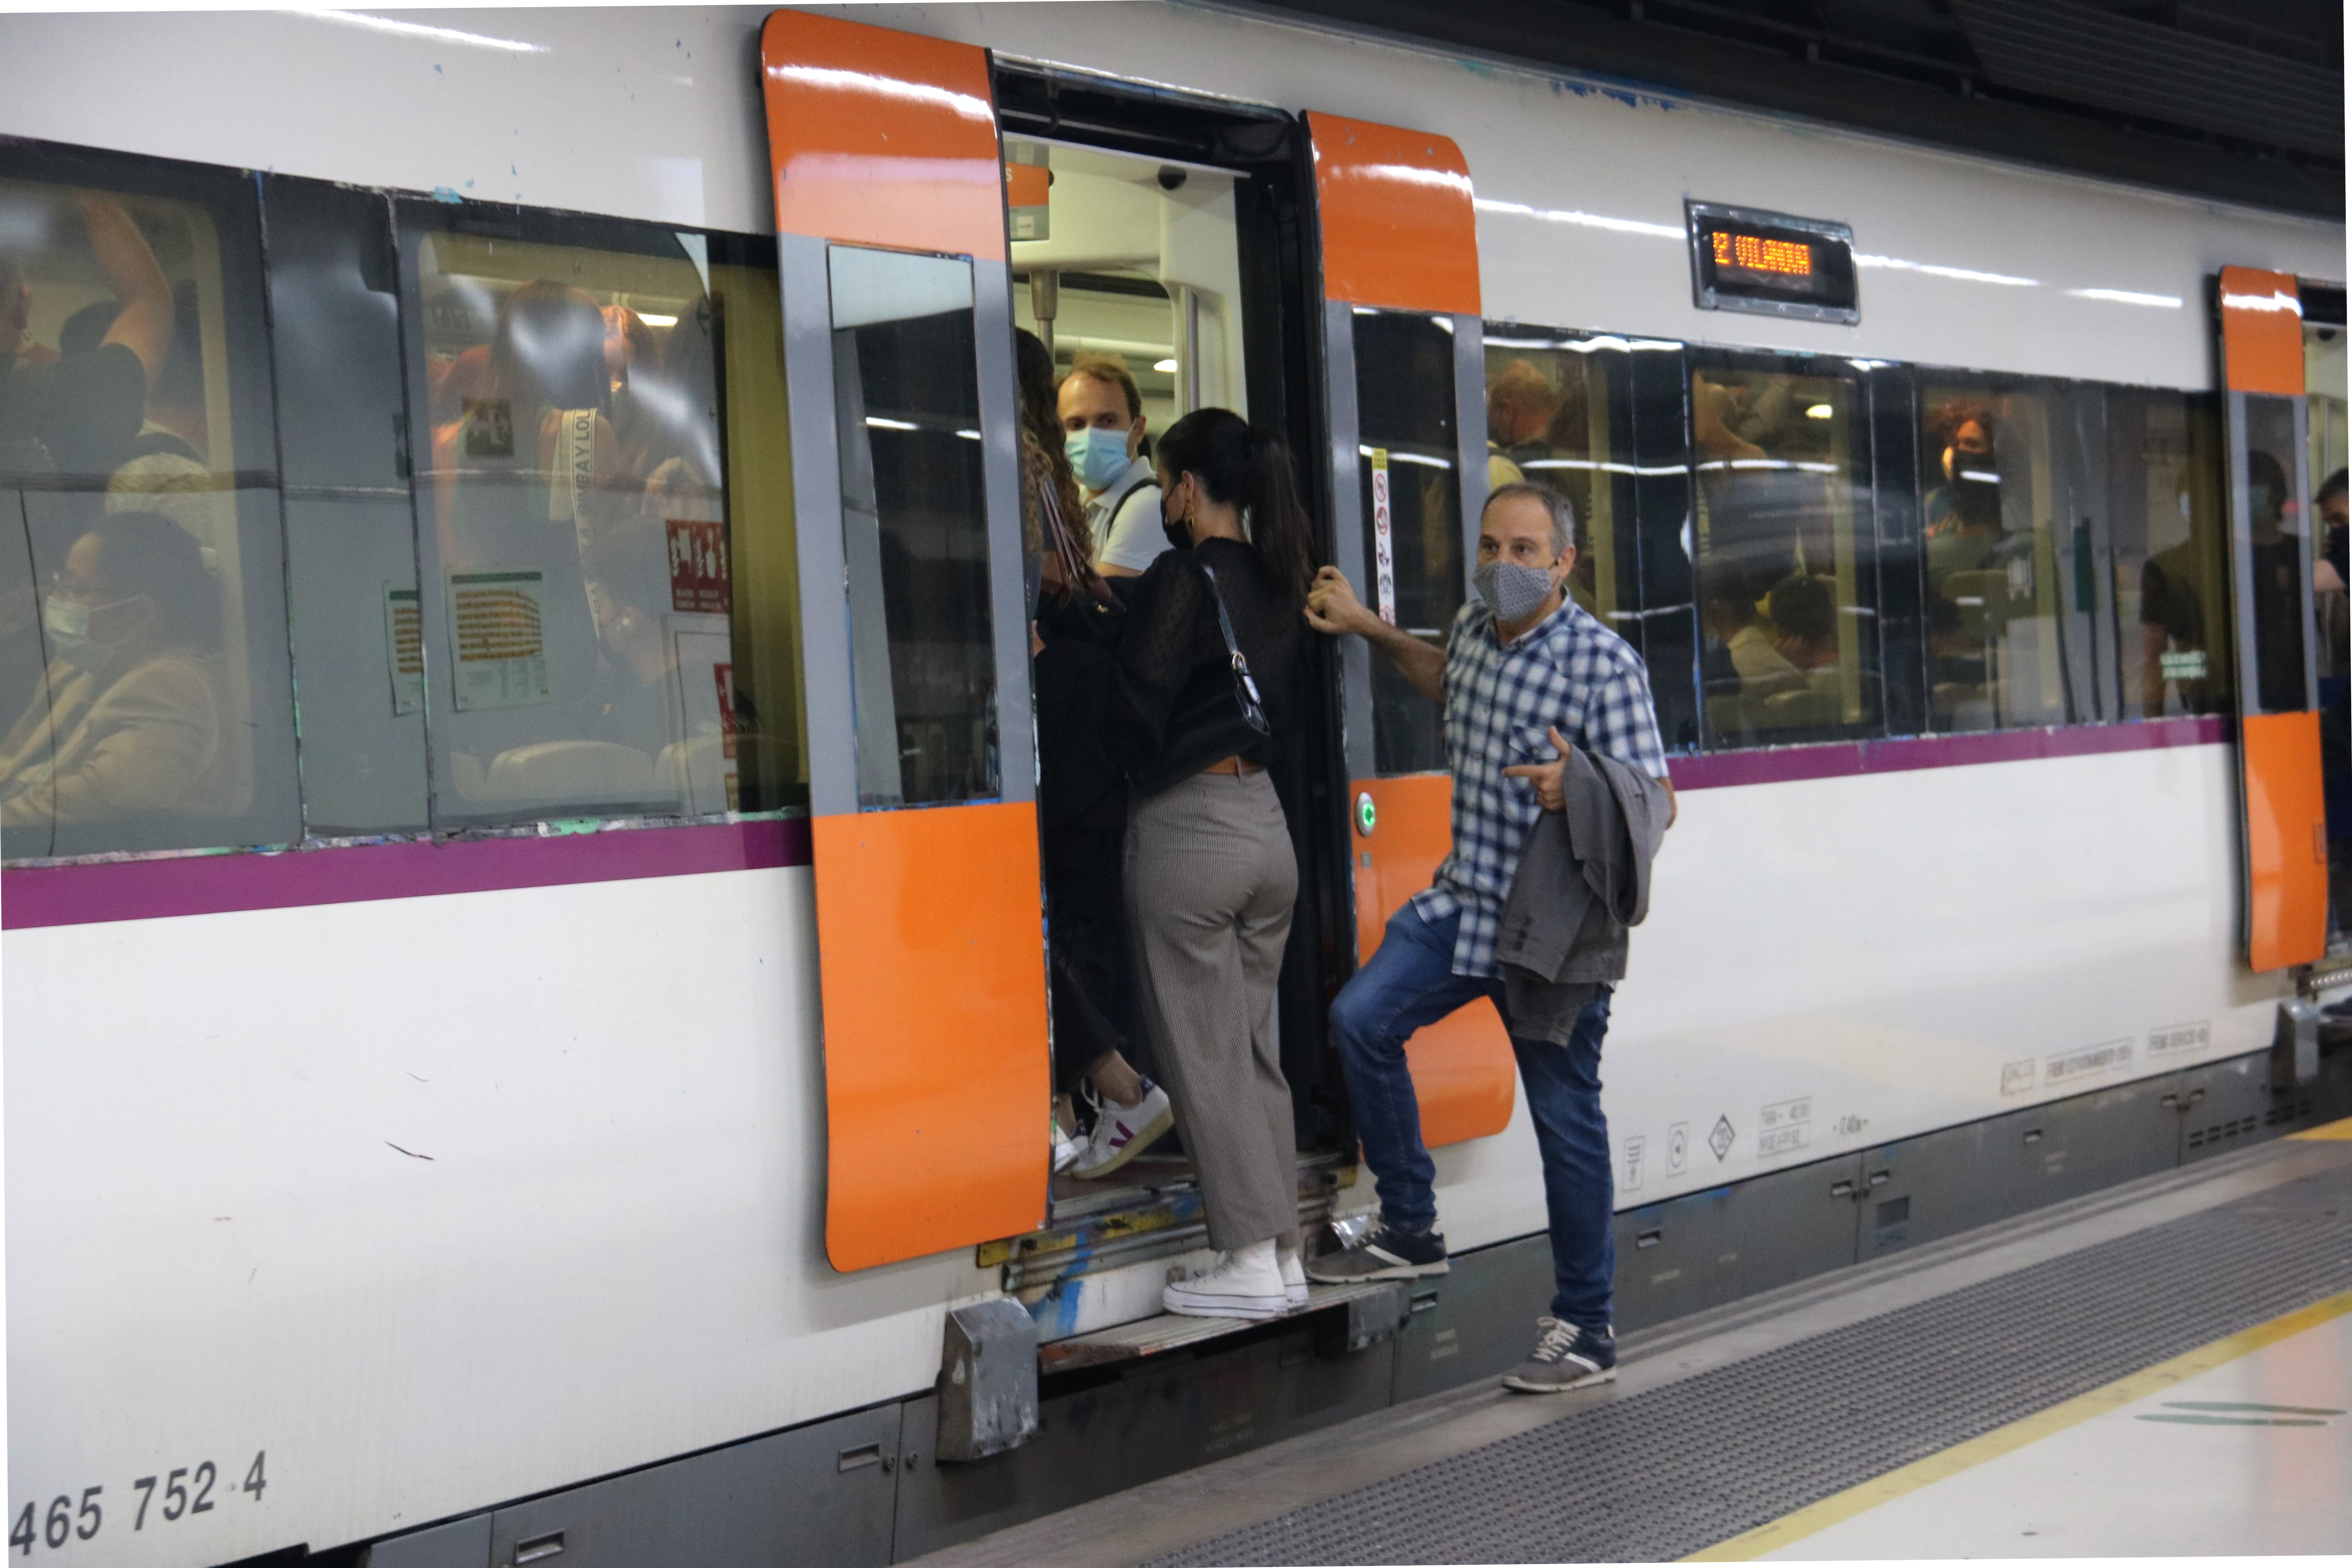 Problemes a Rodalies per la covid: cancel·len entre 20 i 30 trens al dia